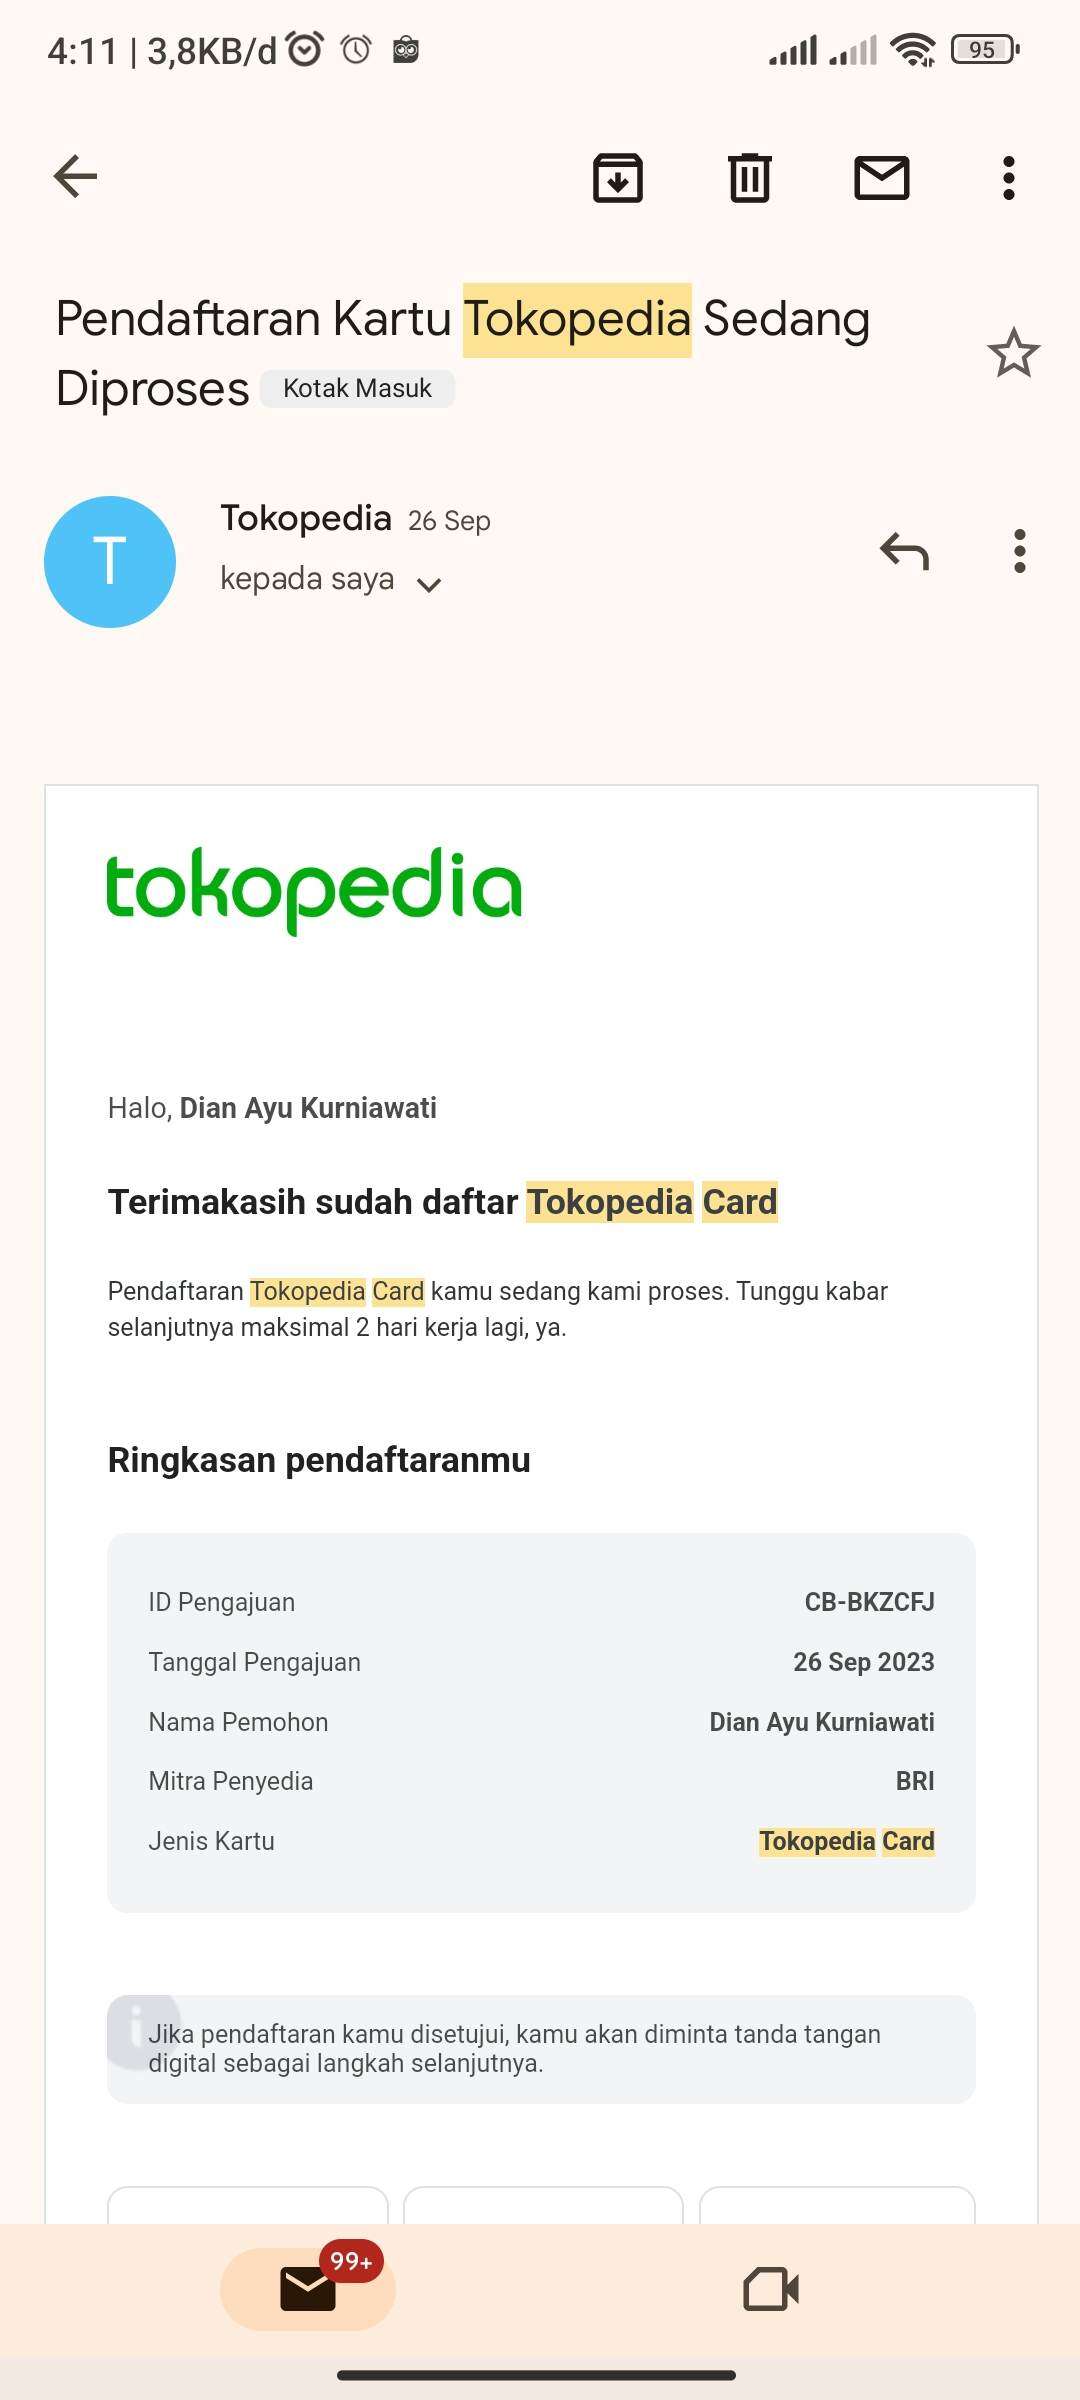 Bukti pendaftaran Tokopedia Card